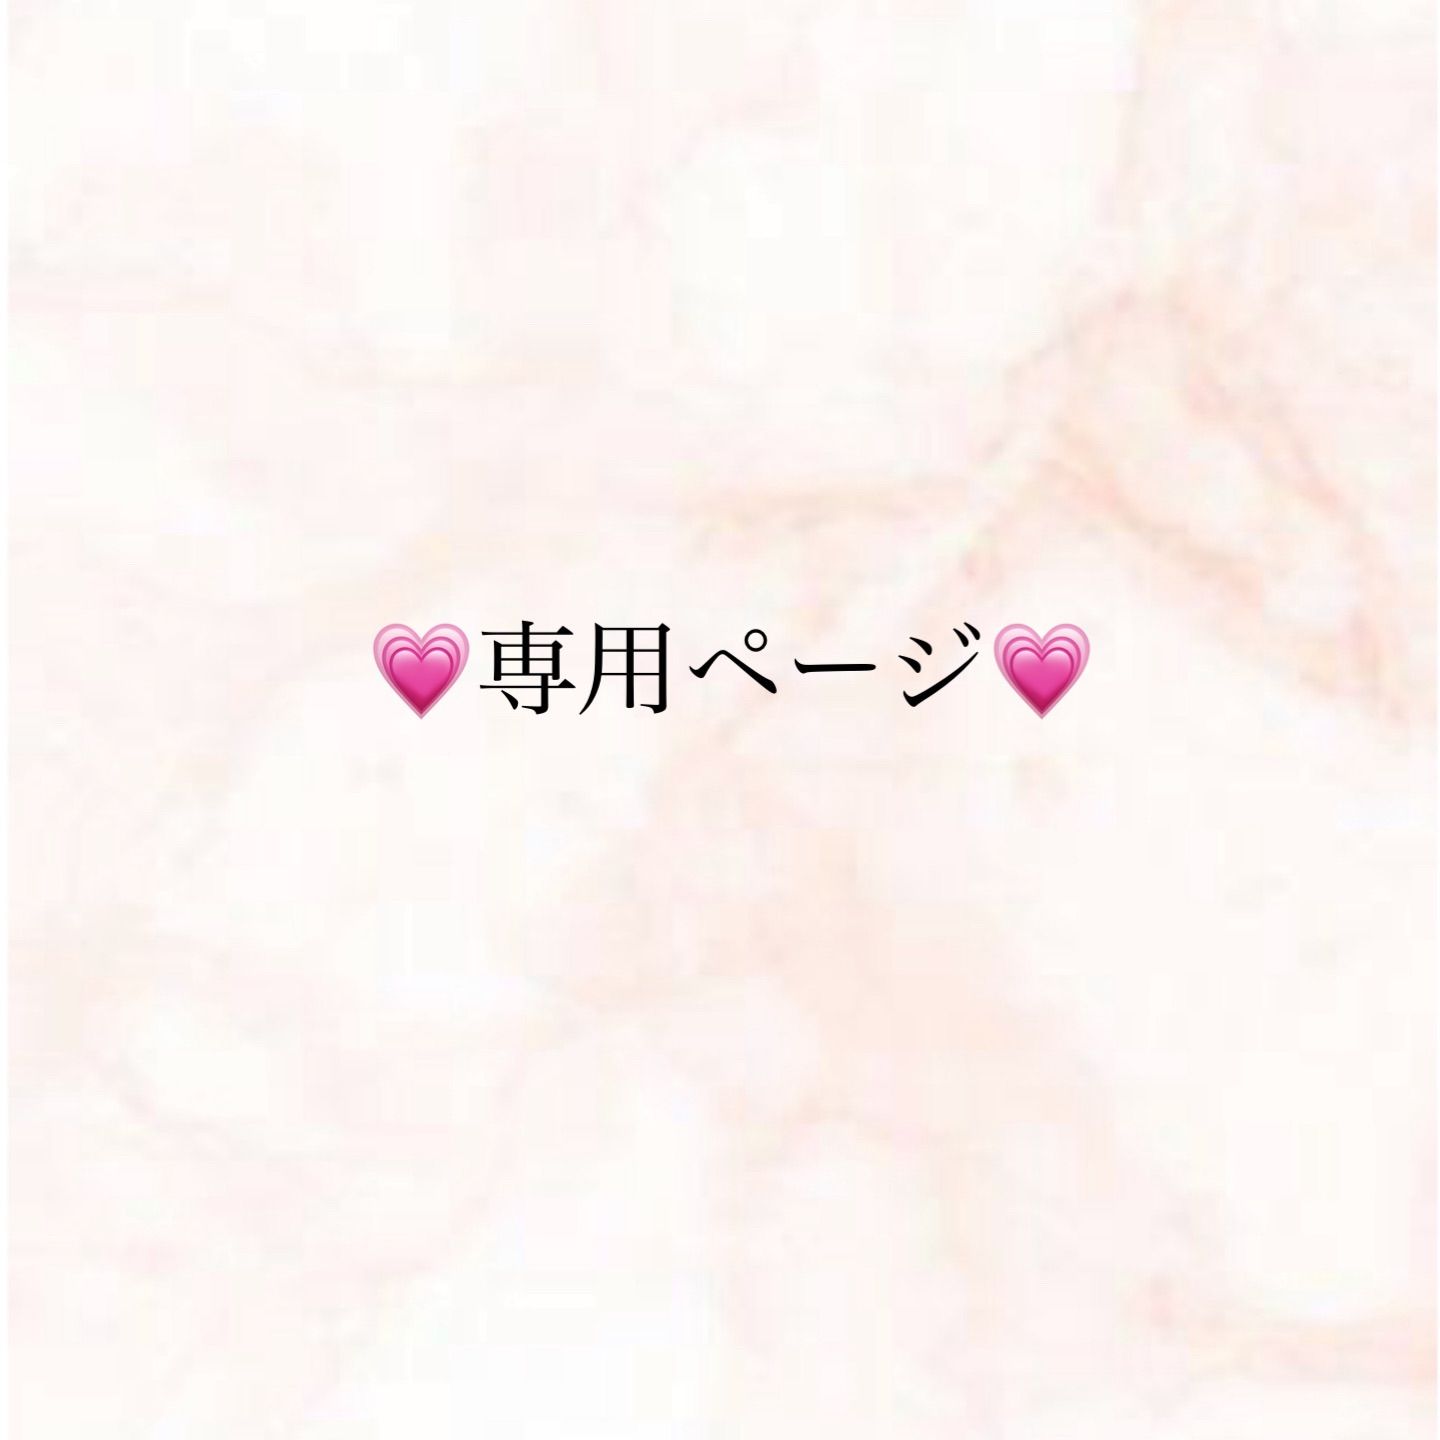 おくちゃん様専用 - salon pink rose - メルカリ